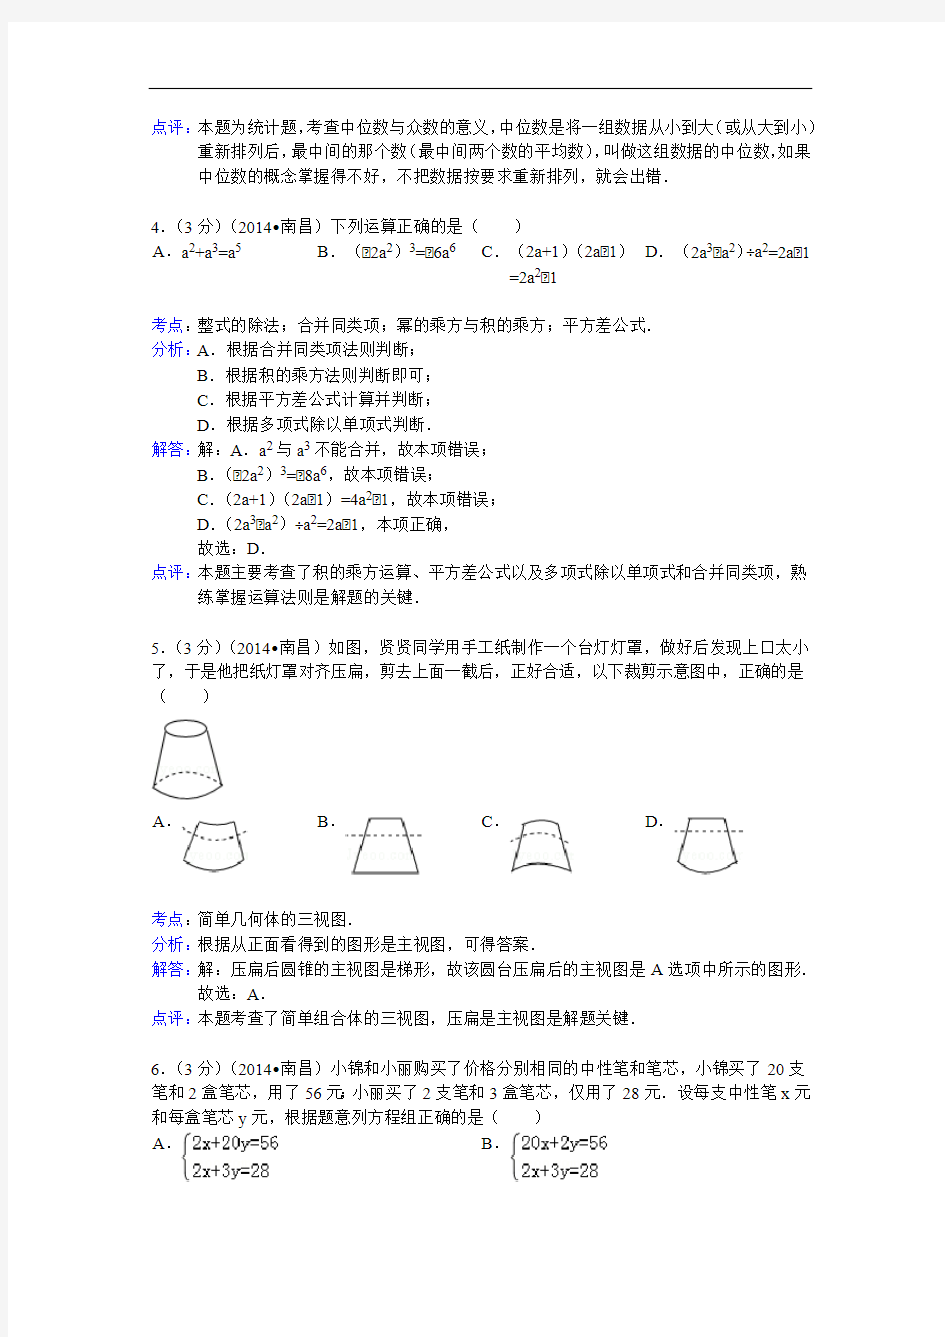 2014年江西省南昌市中考数学试卷(含答案)